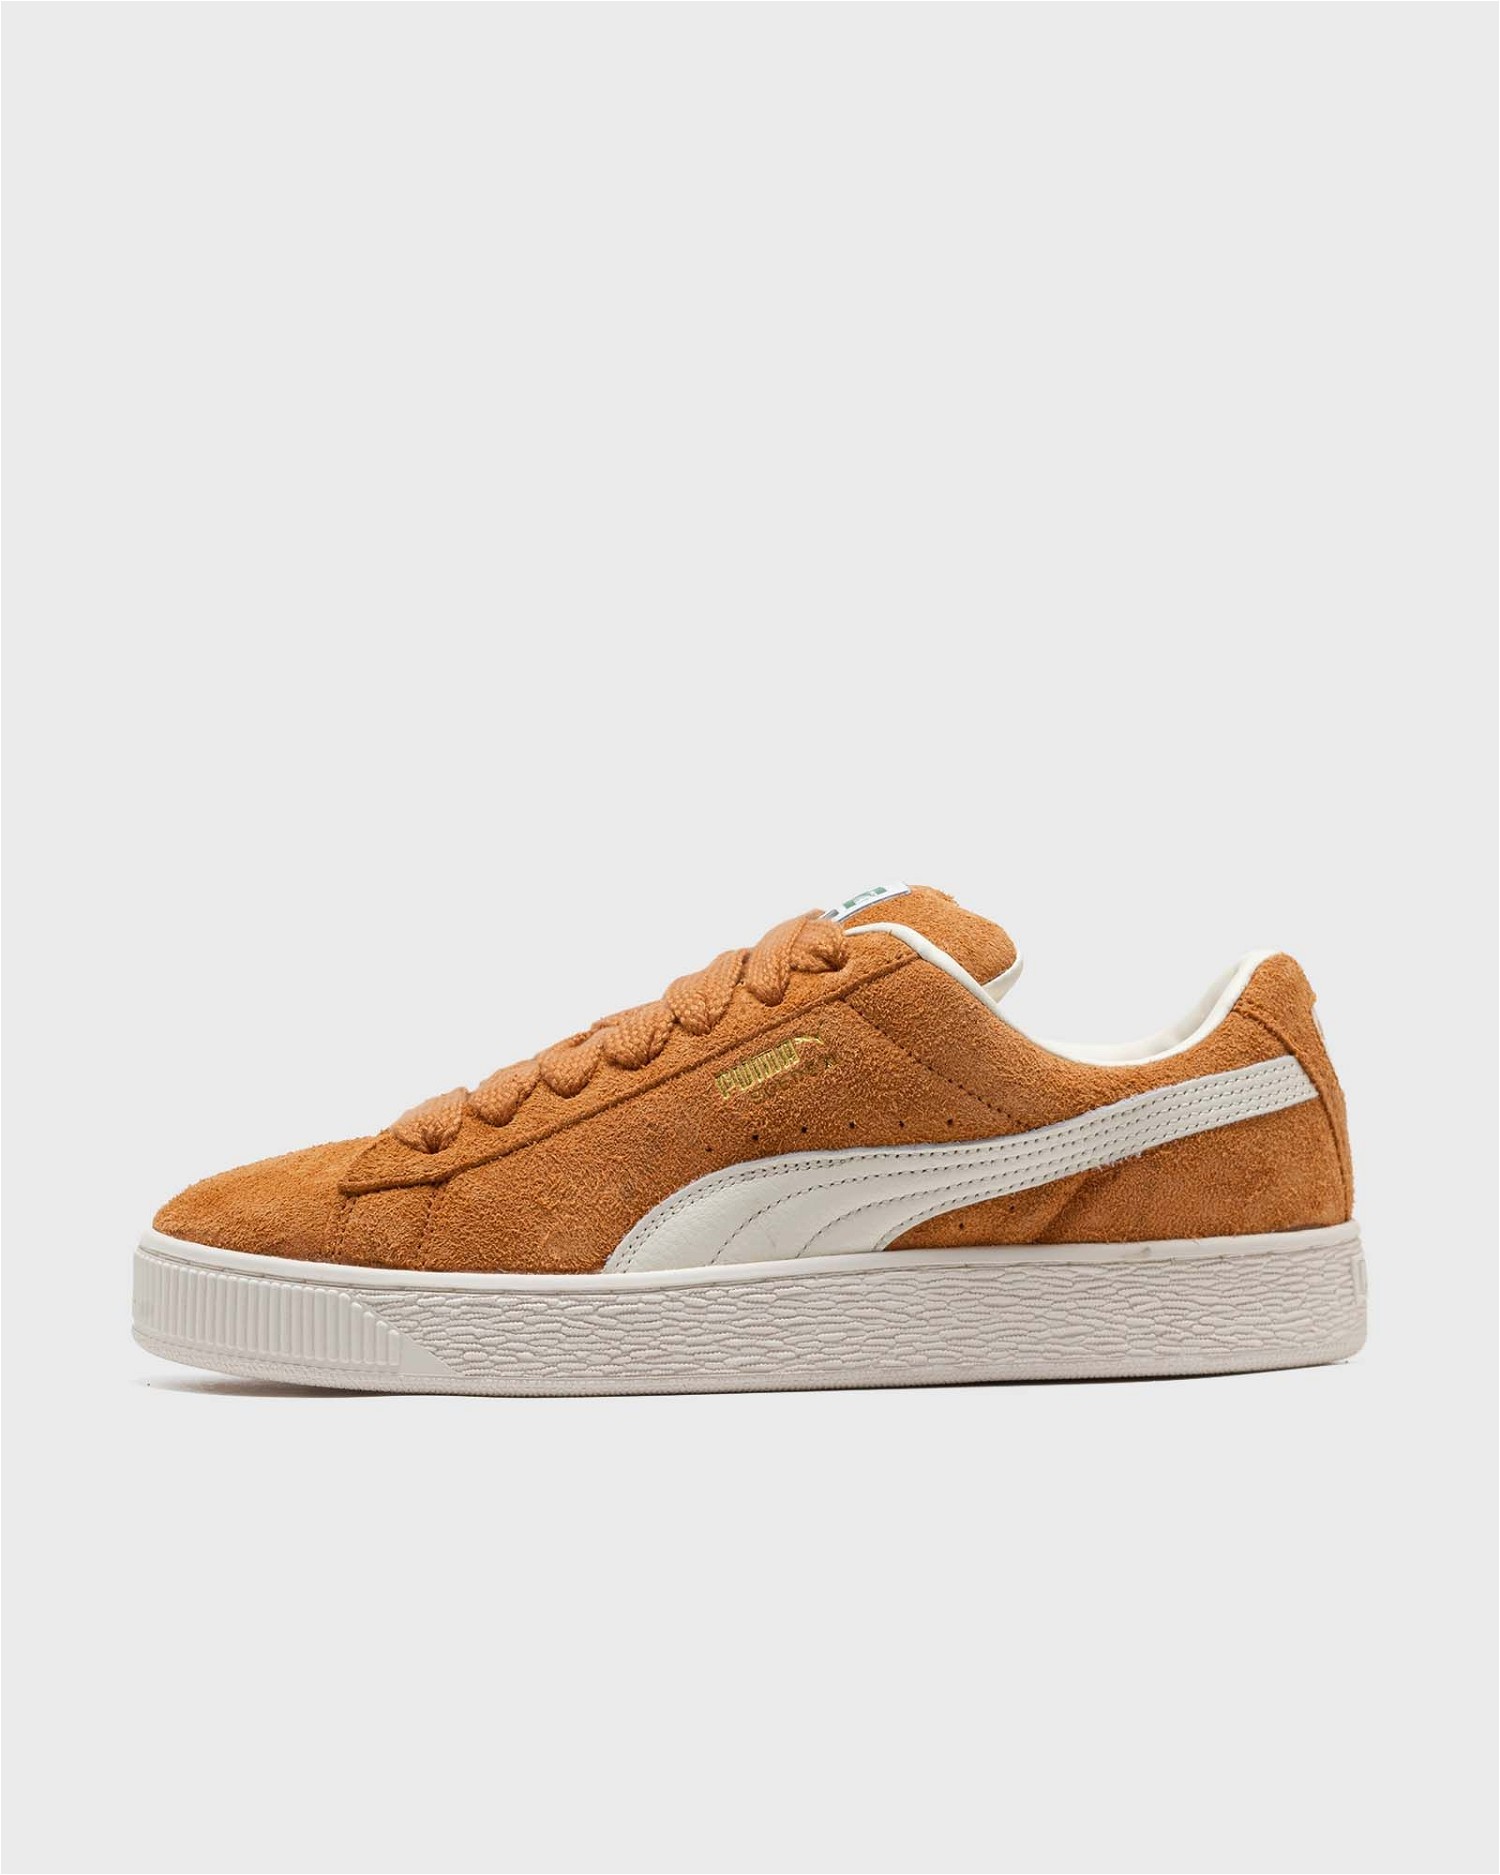 Sneakerek és cipők Puma Suede XL Hairy 
Narancssárga | 397241-04, 0